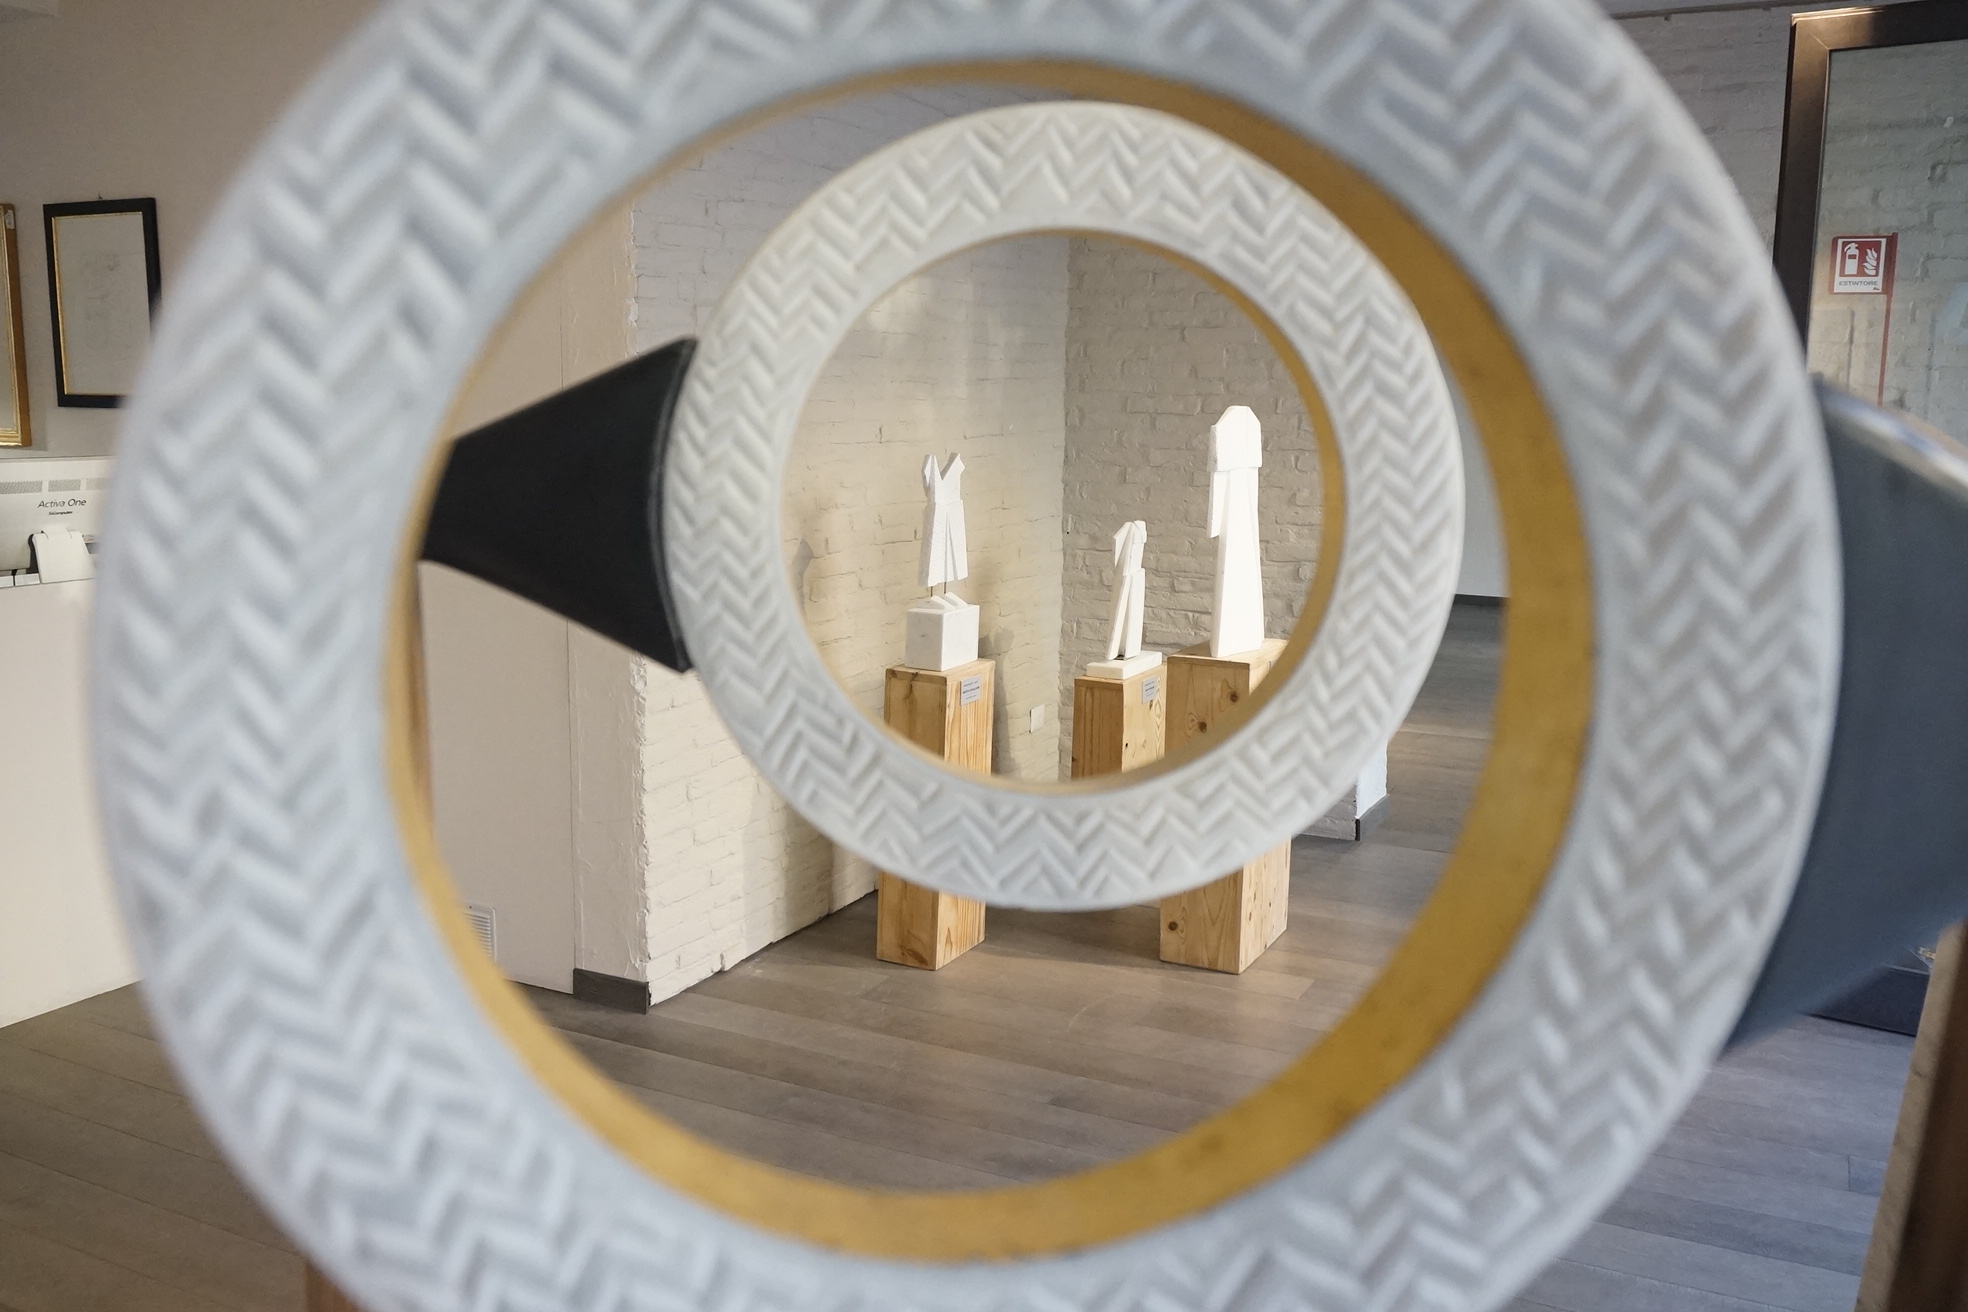 Alla galleria Art Dynasty inaugurazione nuova mostra “Materia, forme e luce”